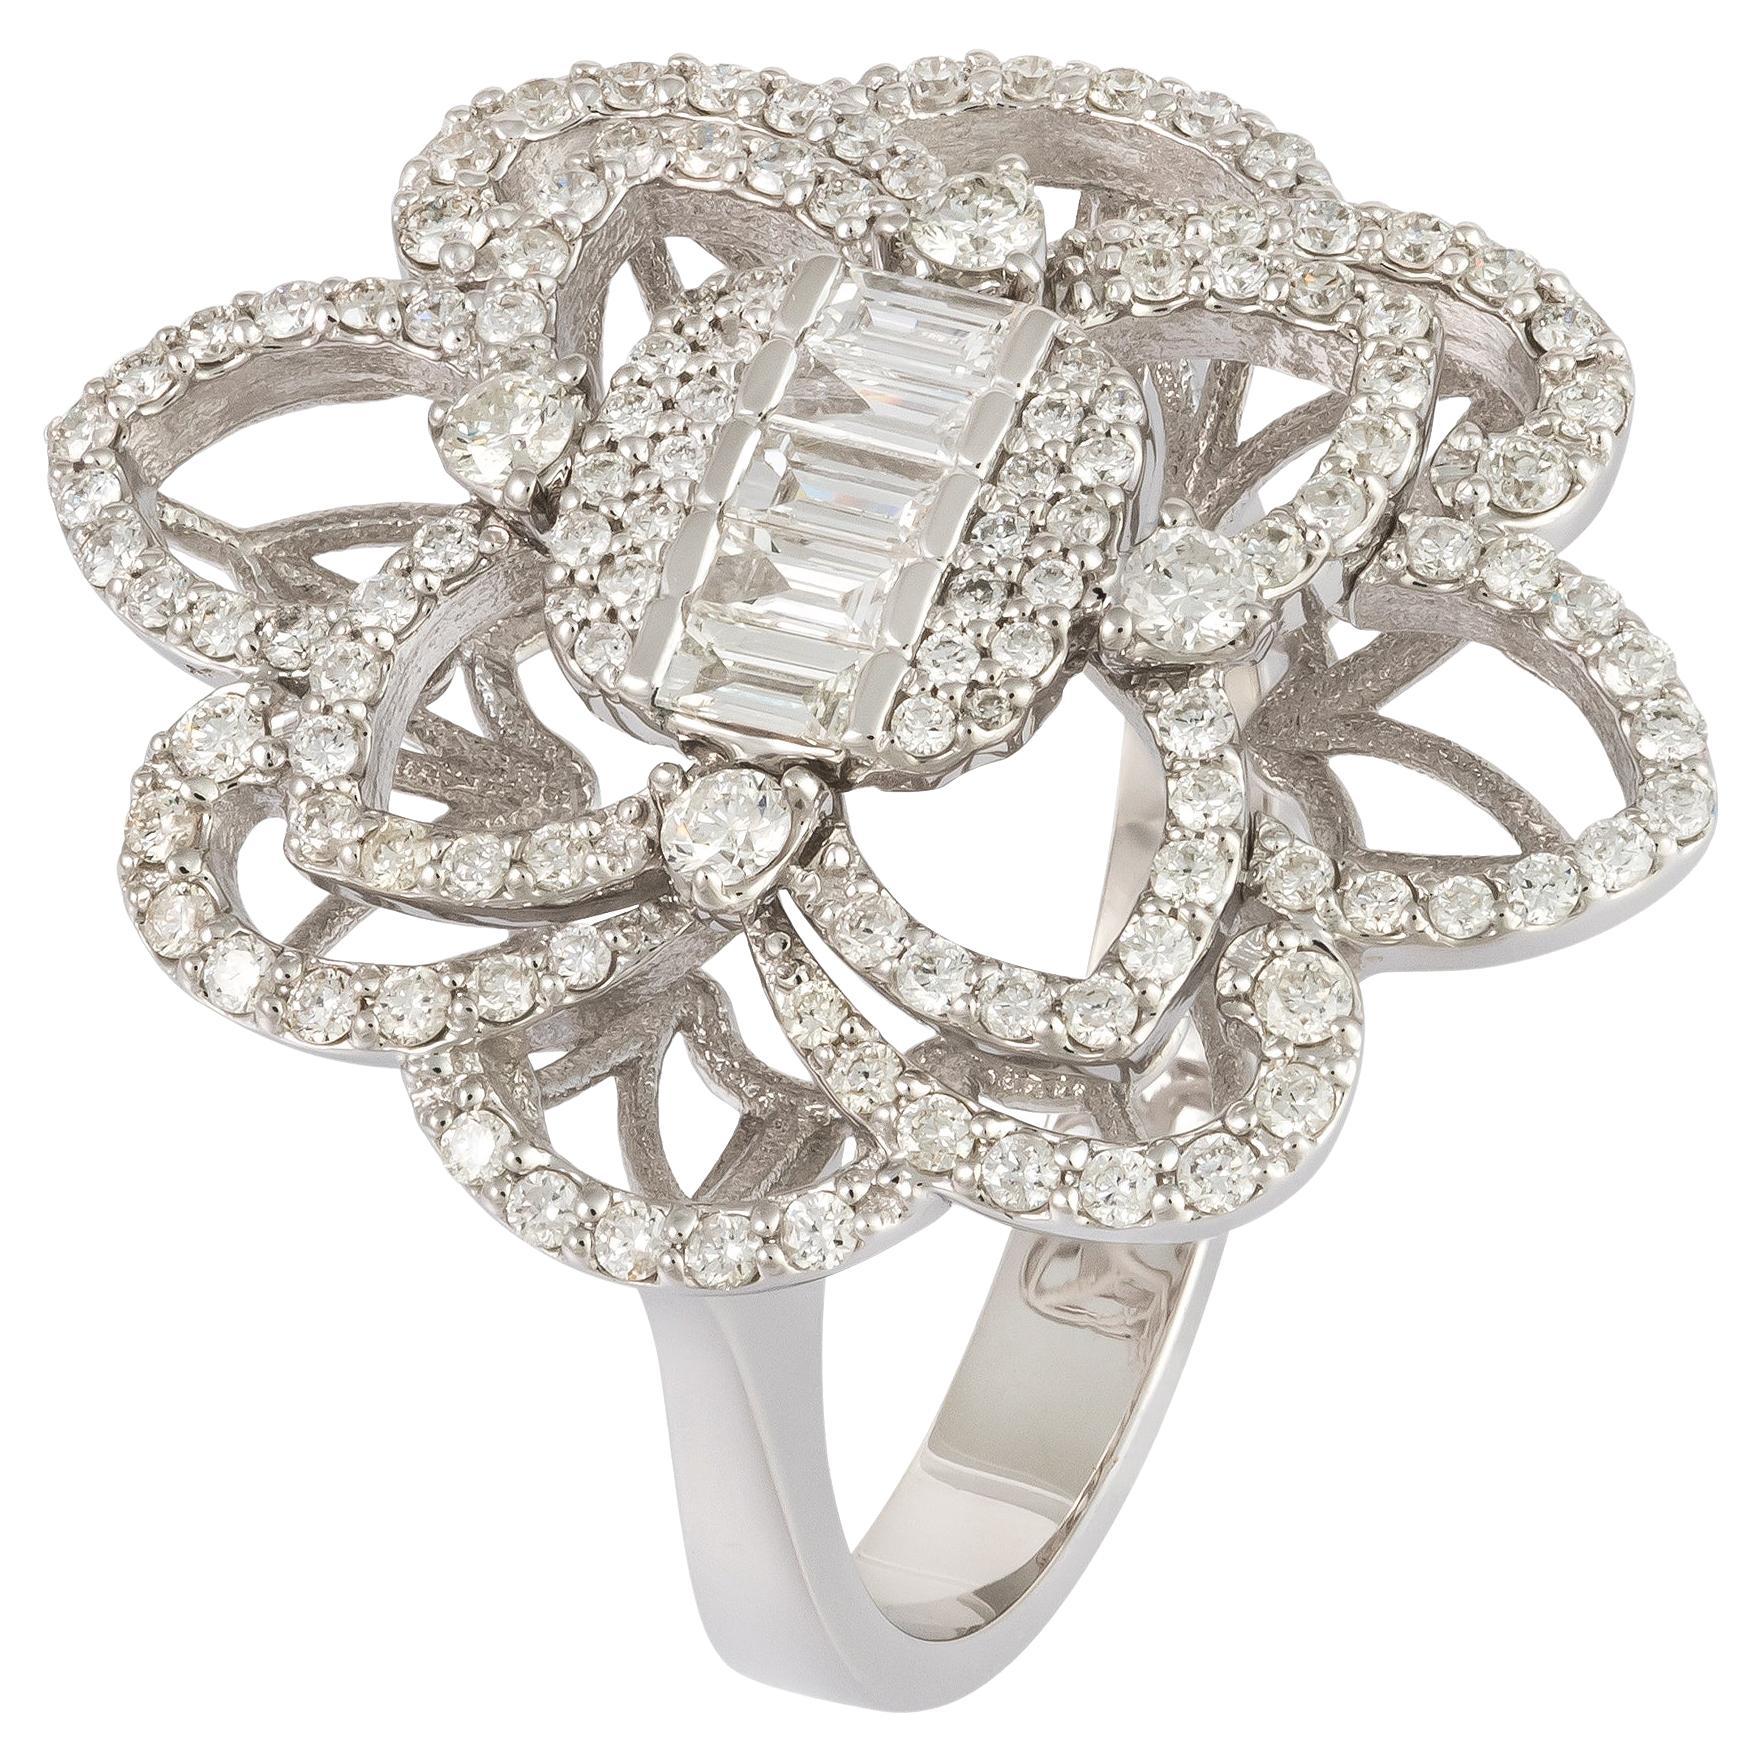 For Sale:  Stunning Flower White 18K Gold White Diamond Ring For Her